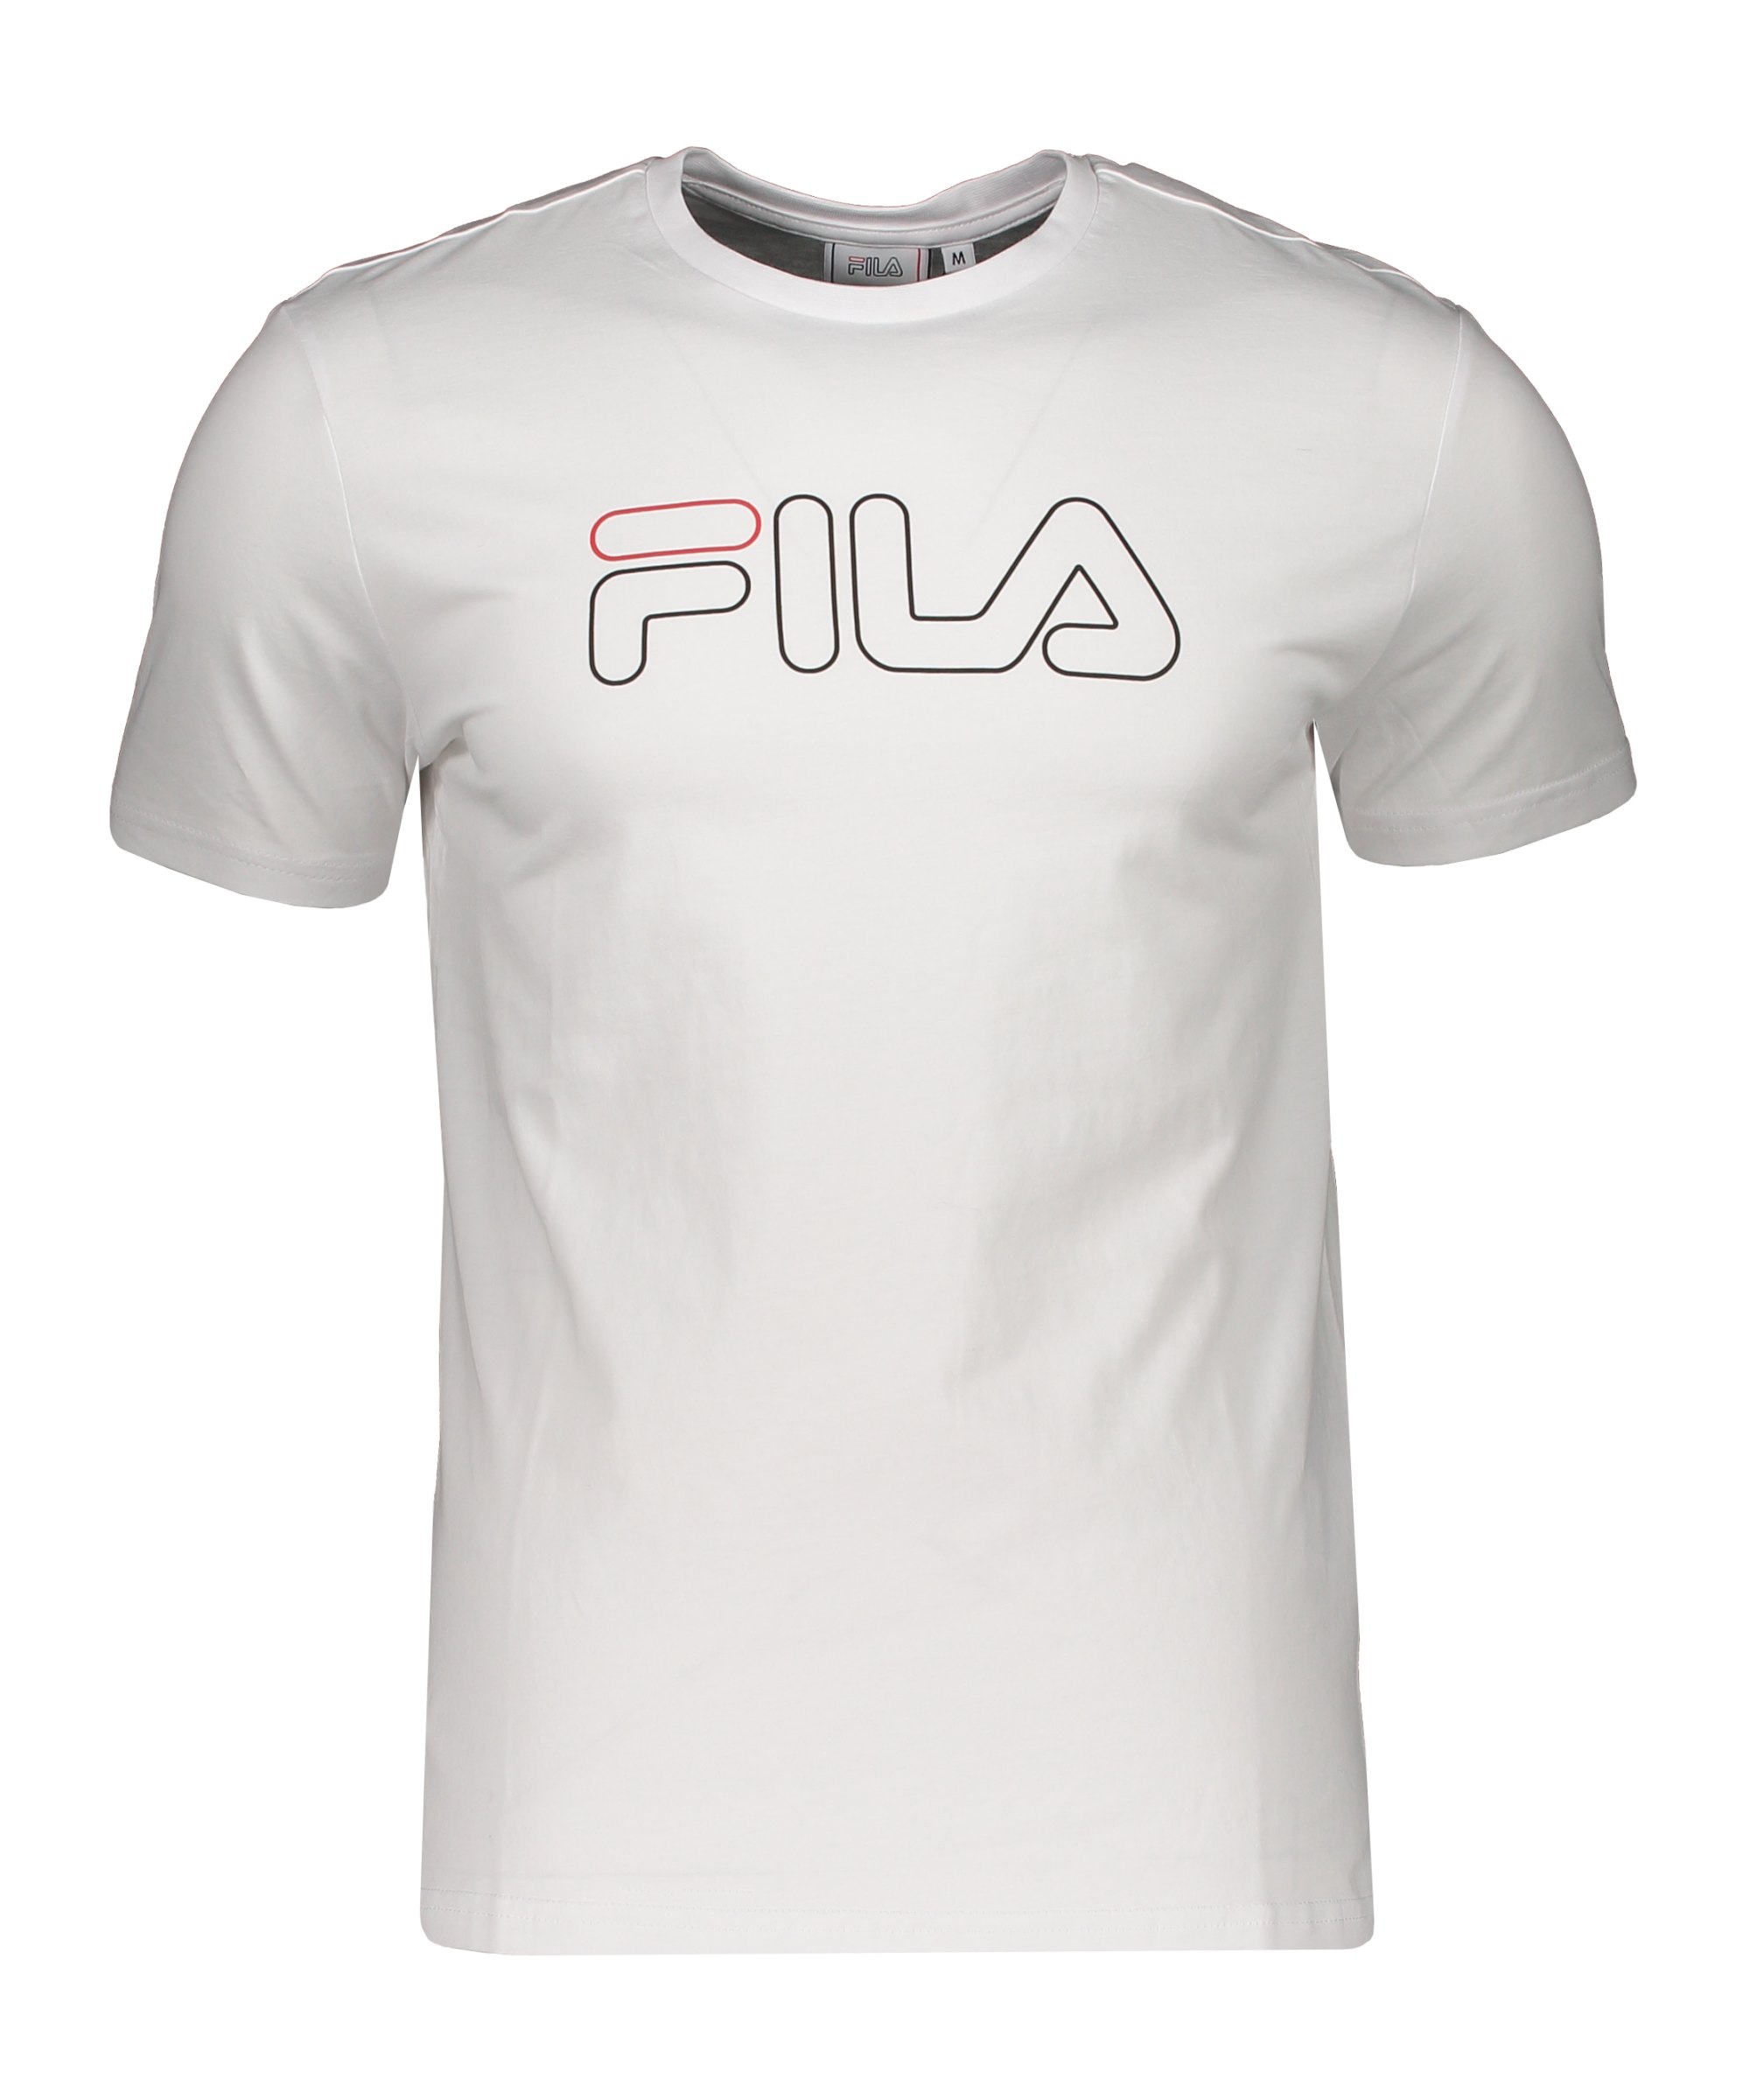 FILA Paul T-Shirt Weiss - weiss